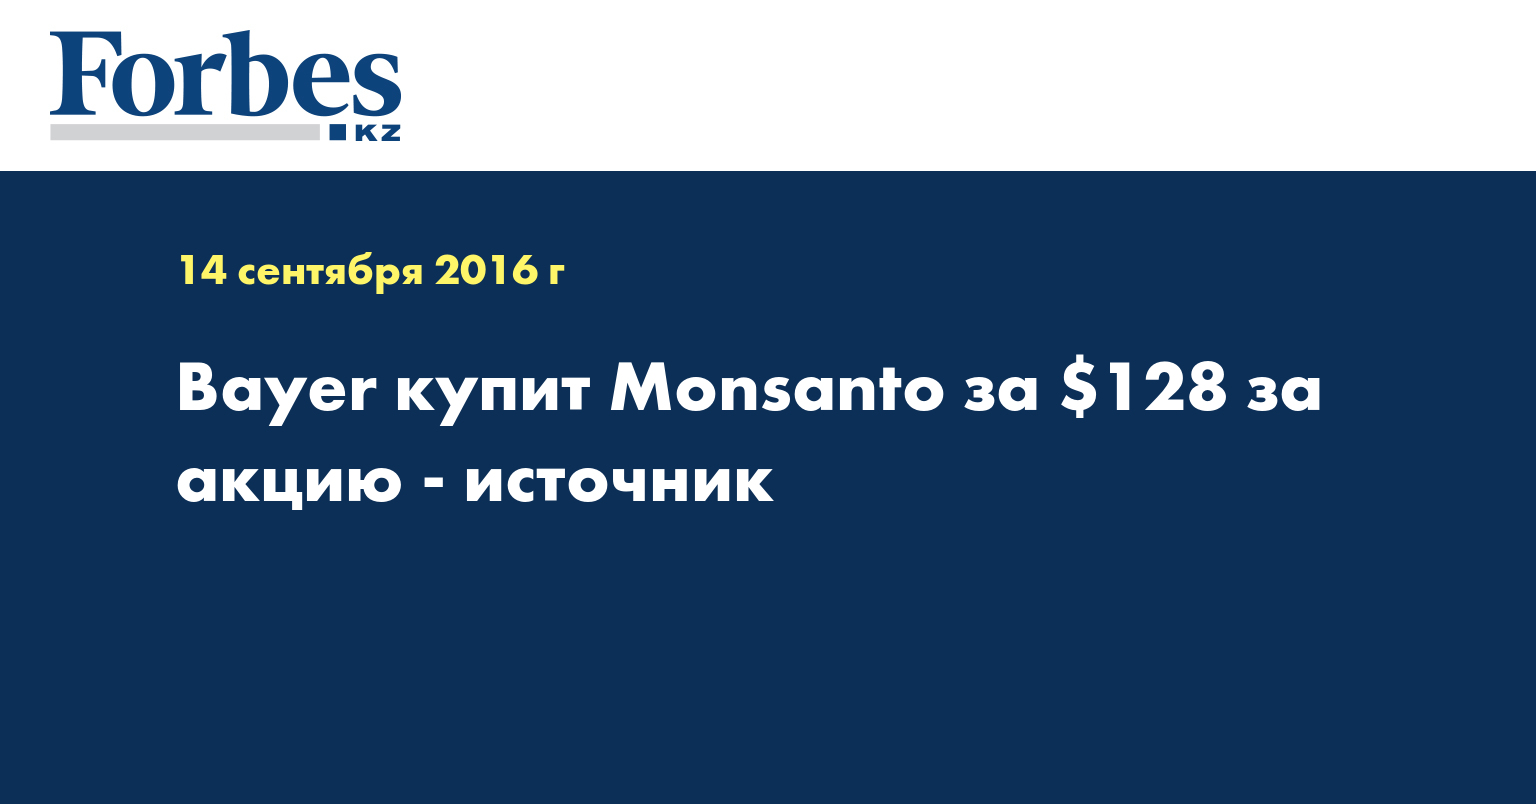 Bayer купит Monsanto за $128 за акцию - источник